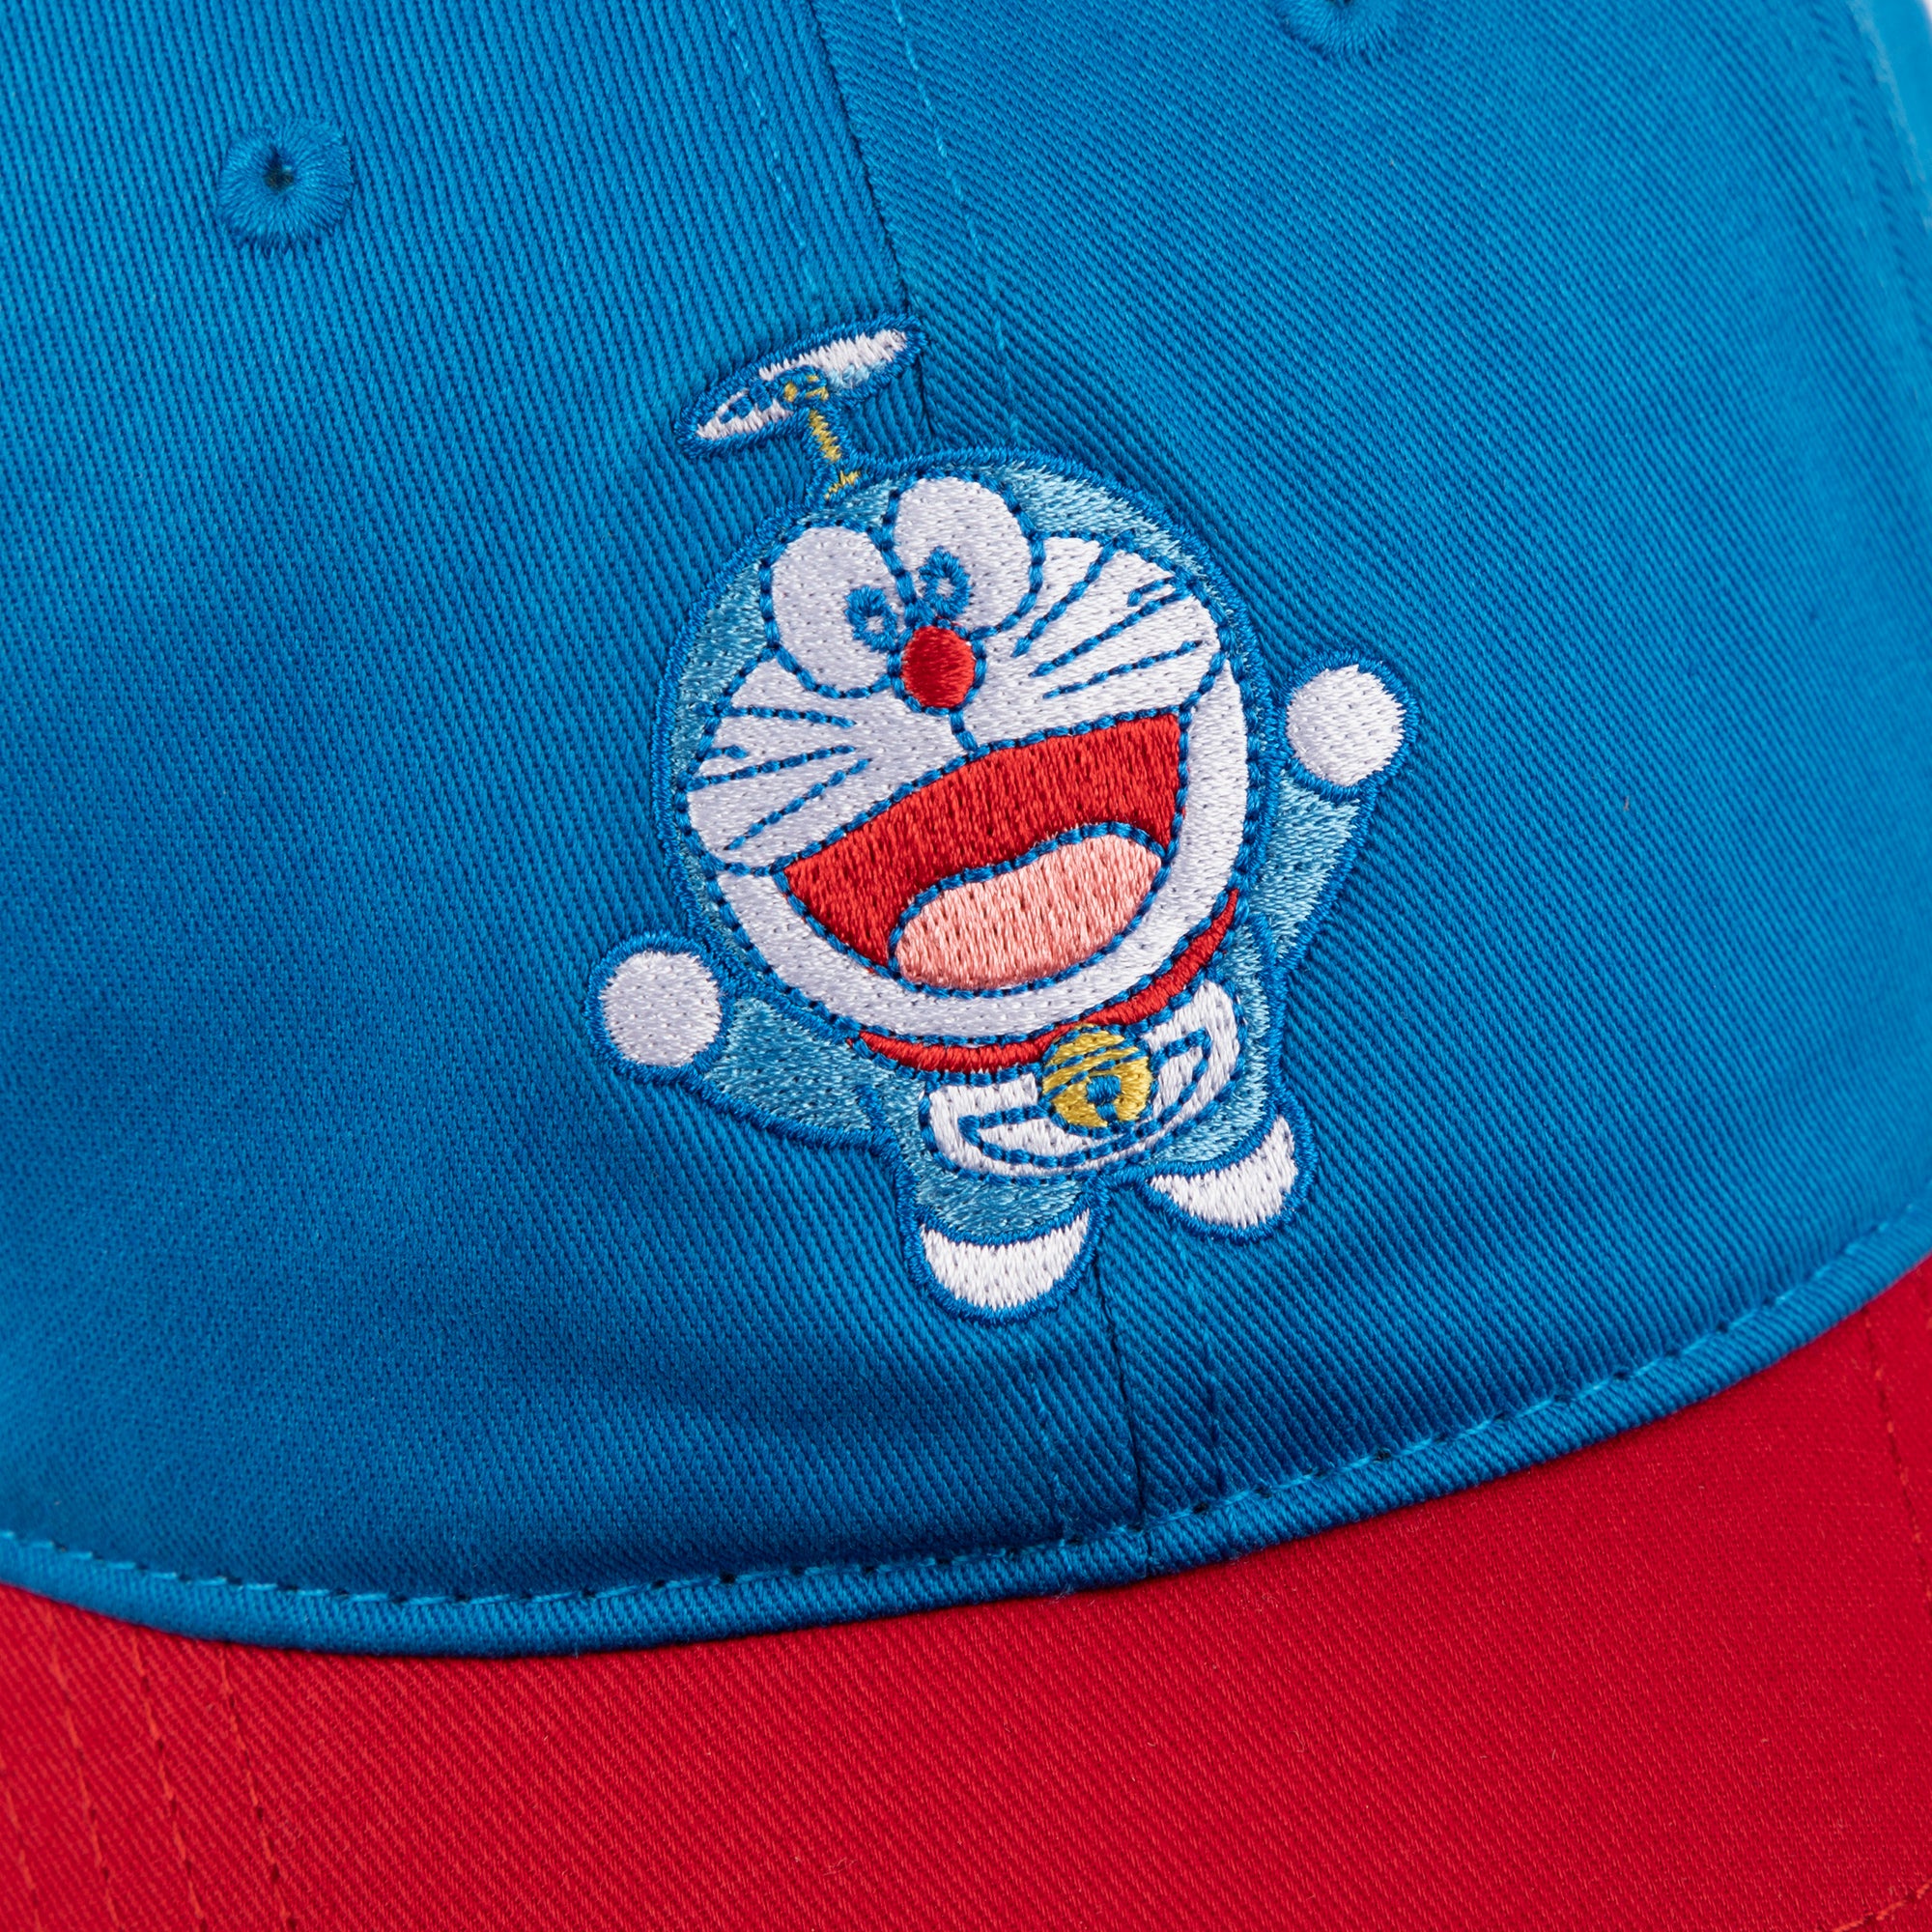 Doraemon Baseball Hat